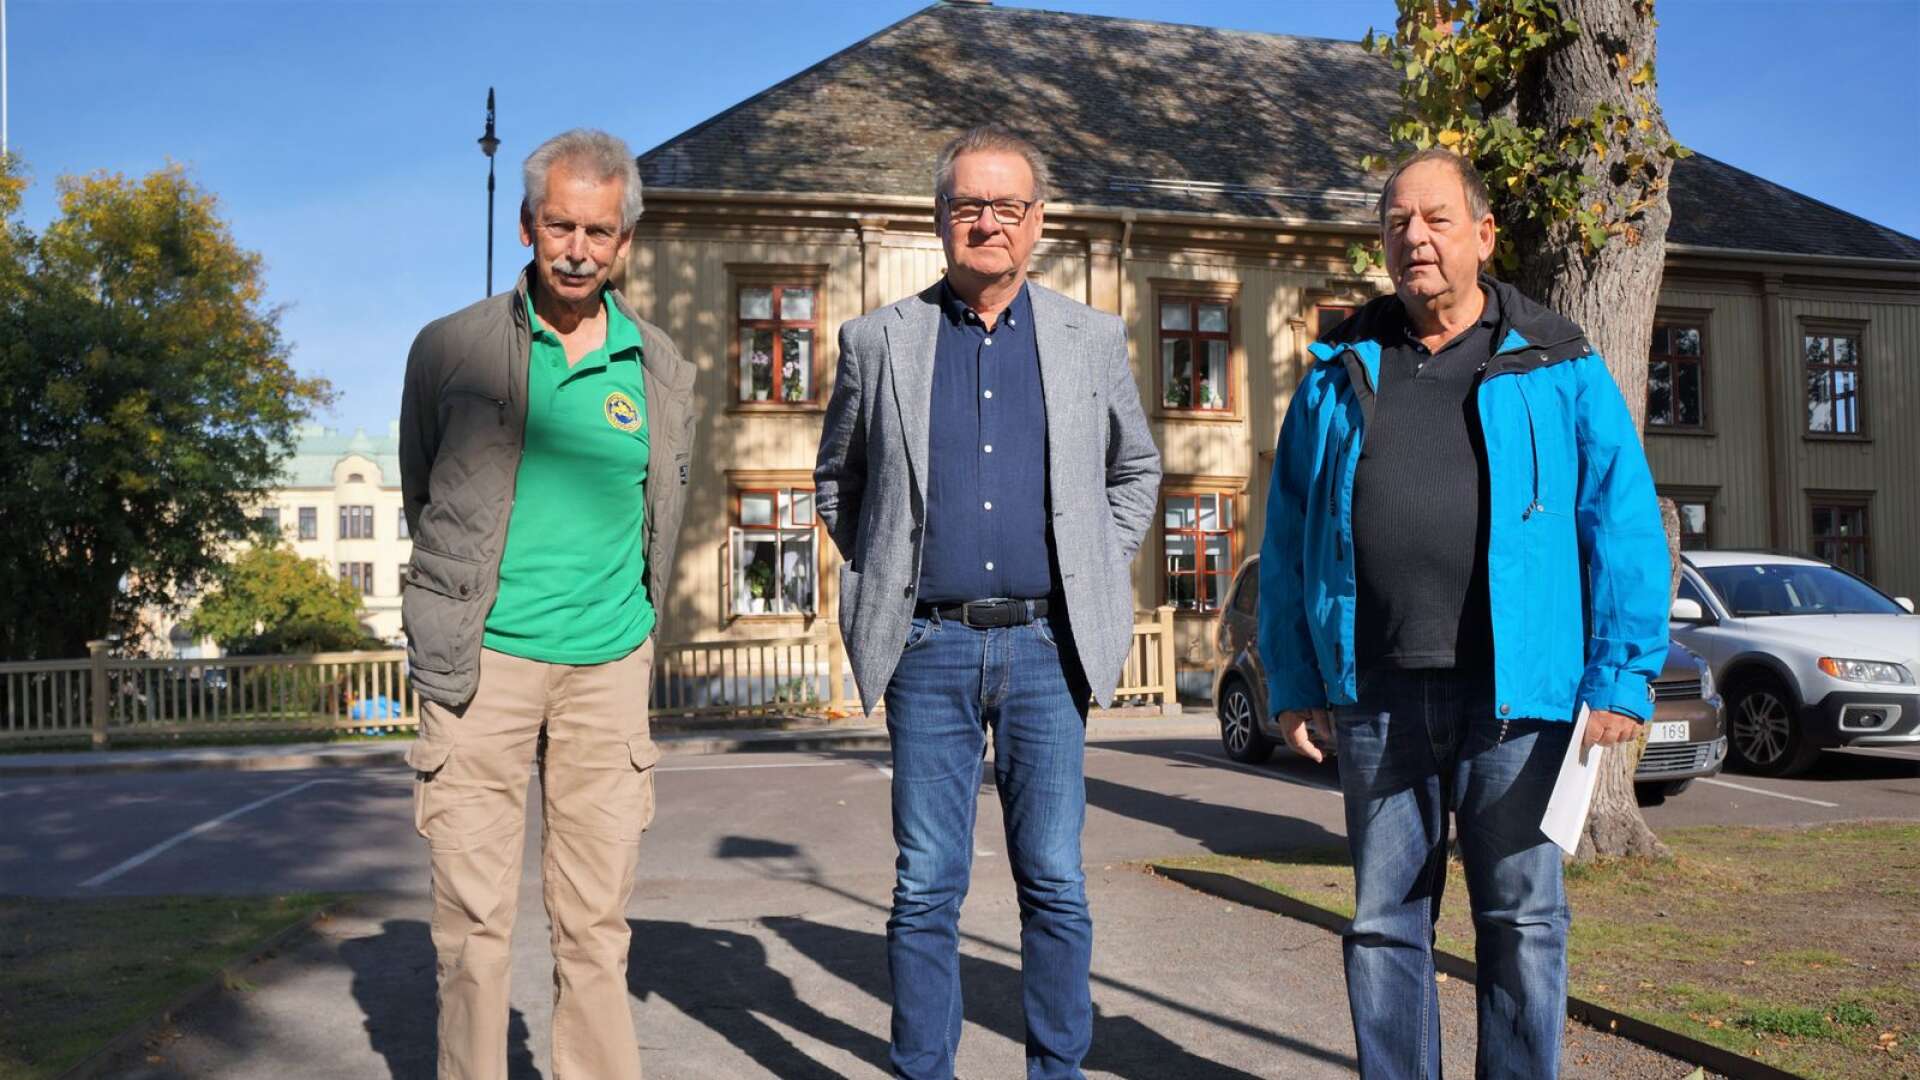 Håkan Sandberg och Jan-Eric Thorin gör comeback för Liberalerna i Åmål. Värvningarna flankerar partiets lokale ordförande Peter Stenberg.